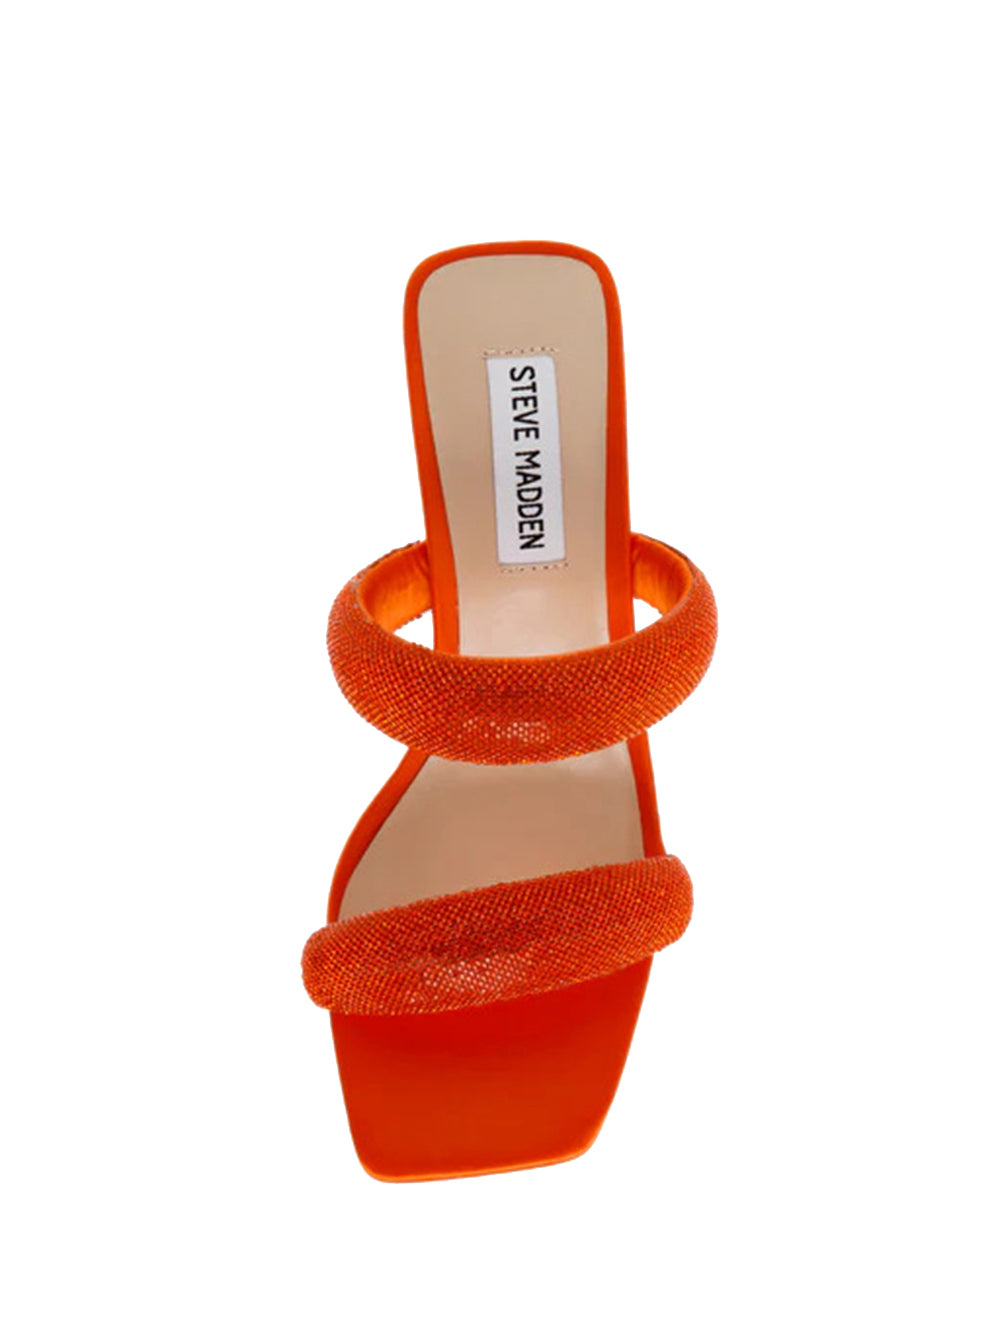 Sandalo Donna Arancio con suola in gomma